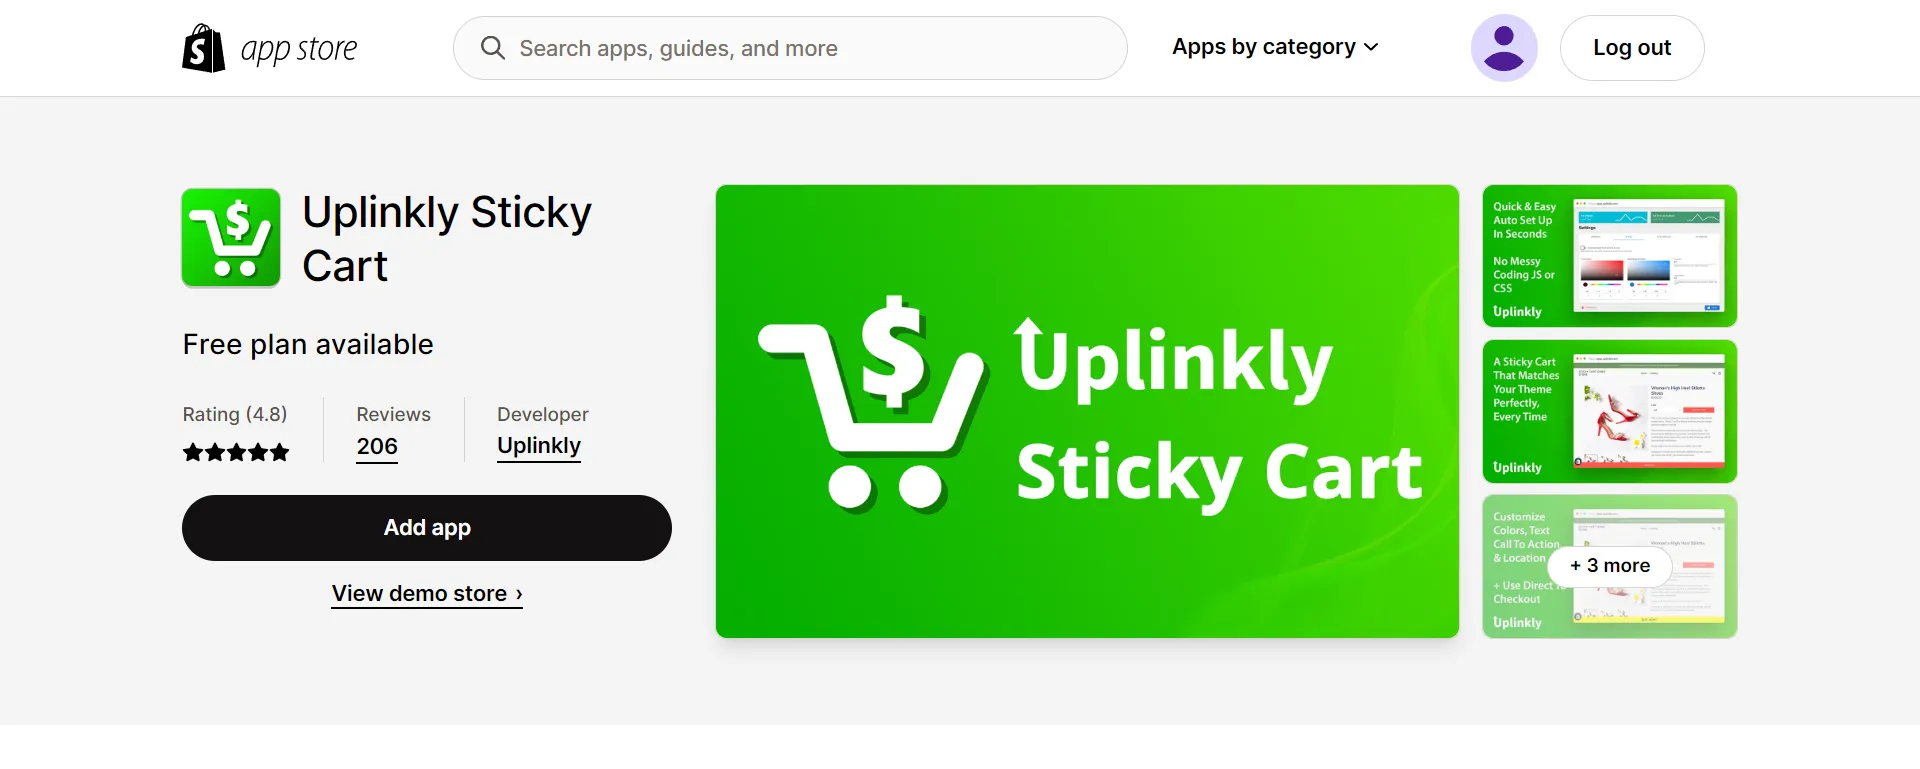 Uplinkly's Sticky Cart